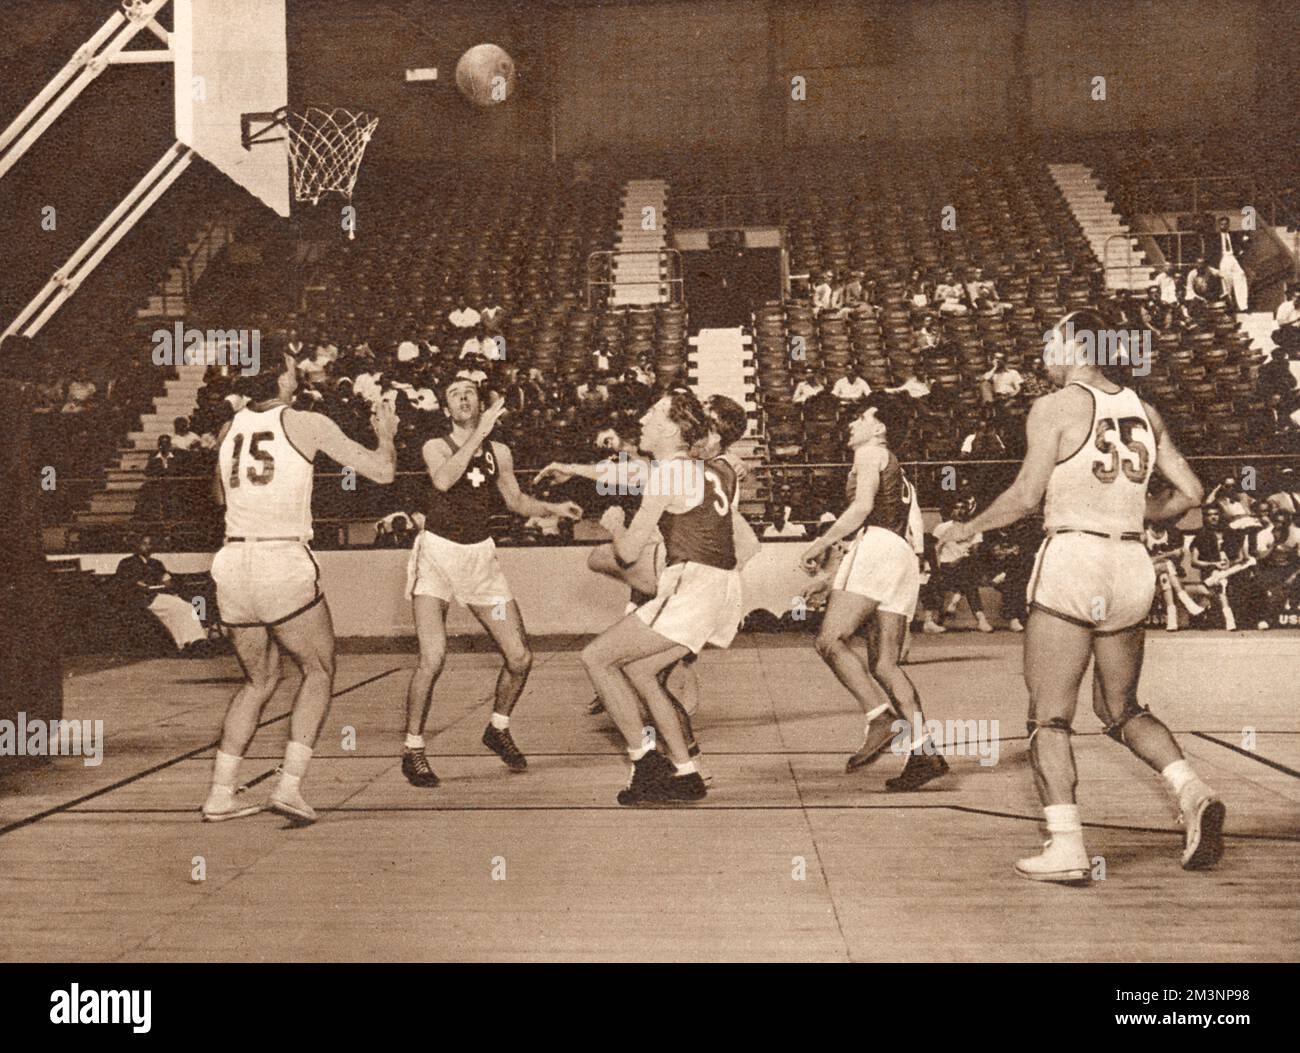 Bei diesem wenig besuchten Basketballspiel in der Harringay Arena schlug das amerikanische Team (in Weiß) das Schweizer Team. Datum: 1948 Stockfoto